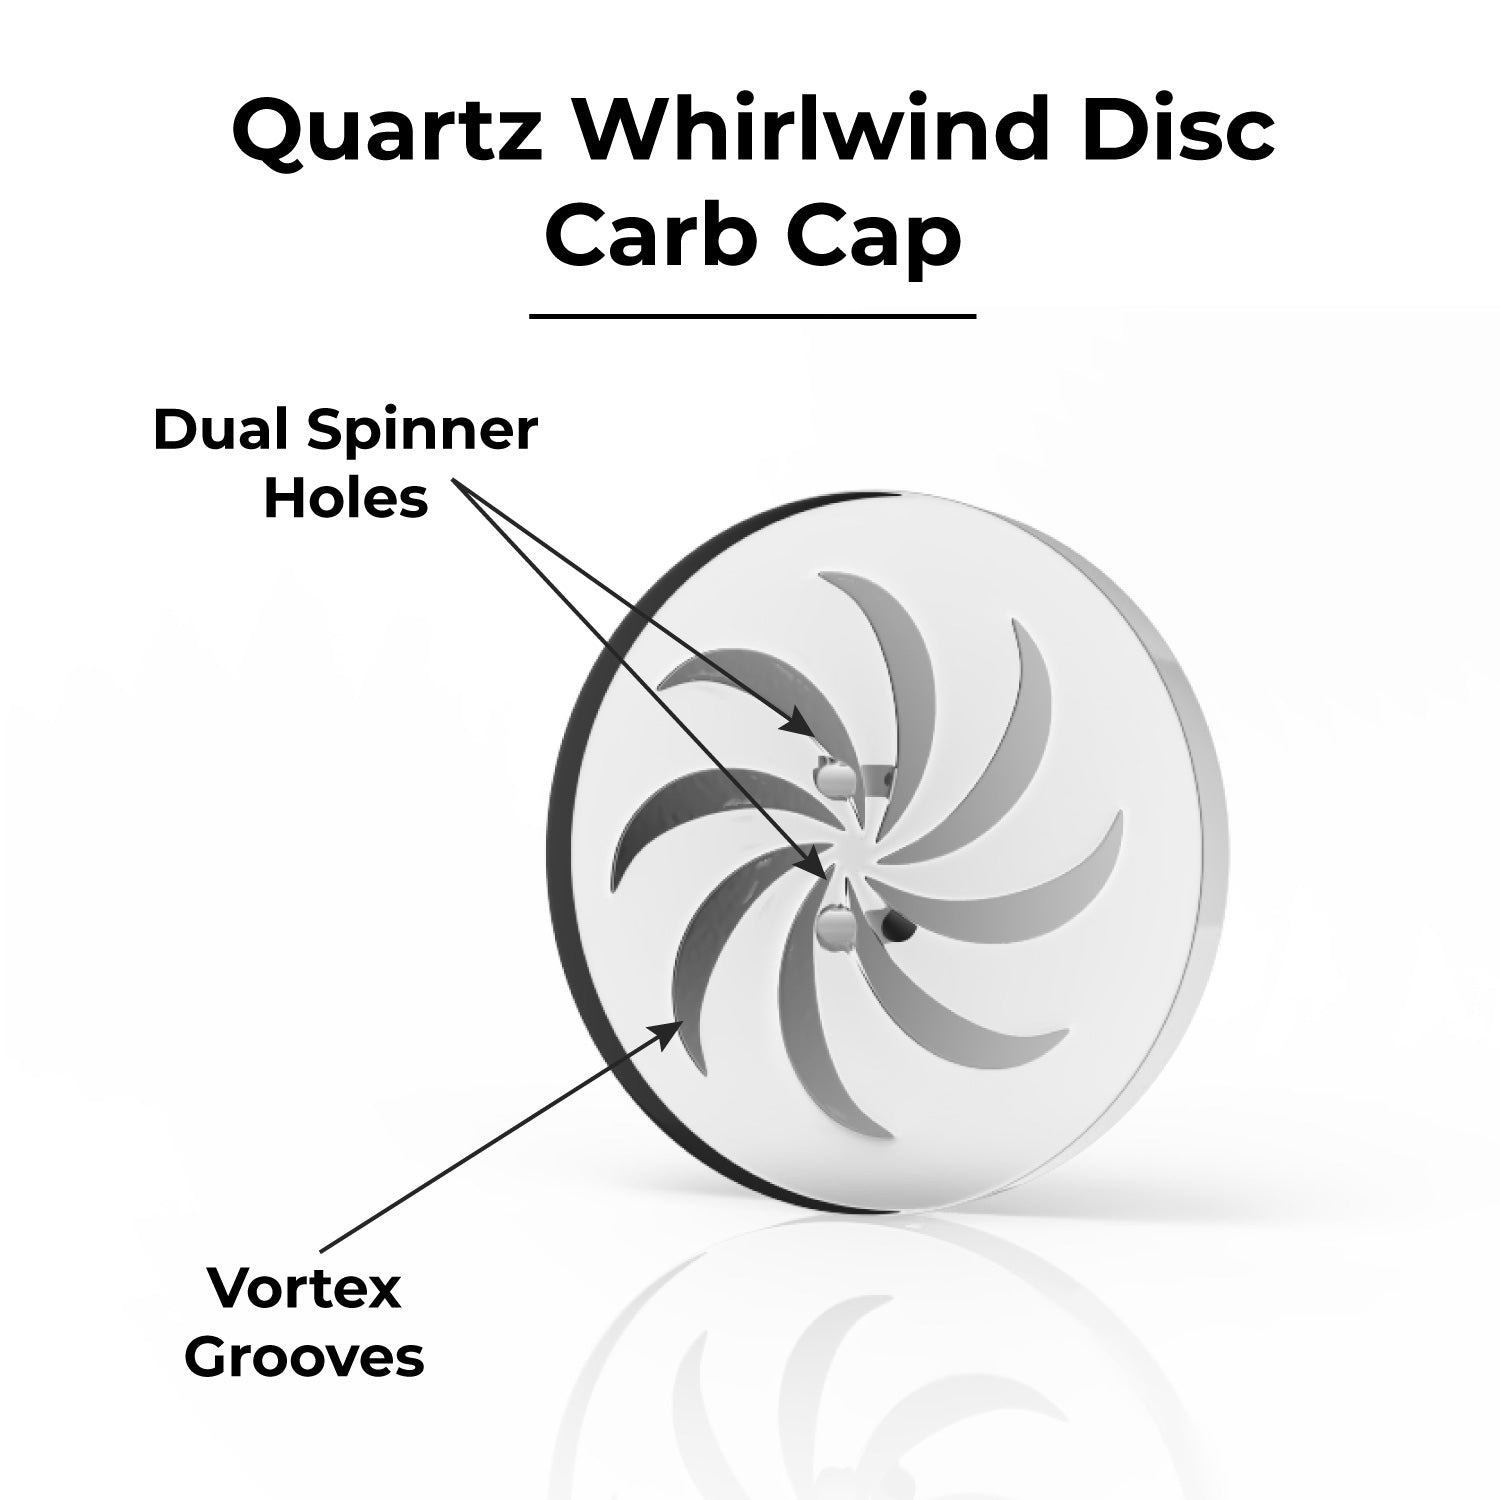 Quartz Whirlwind Disc  Carb Cap